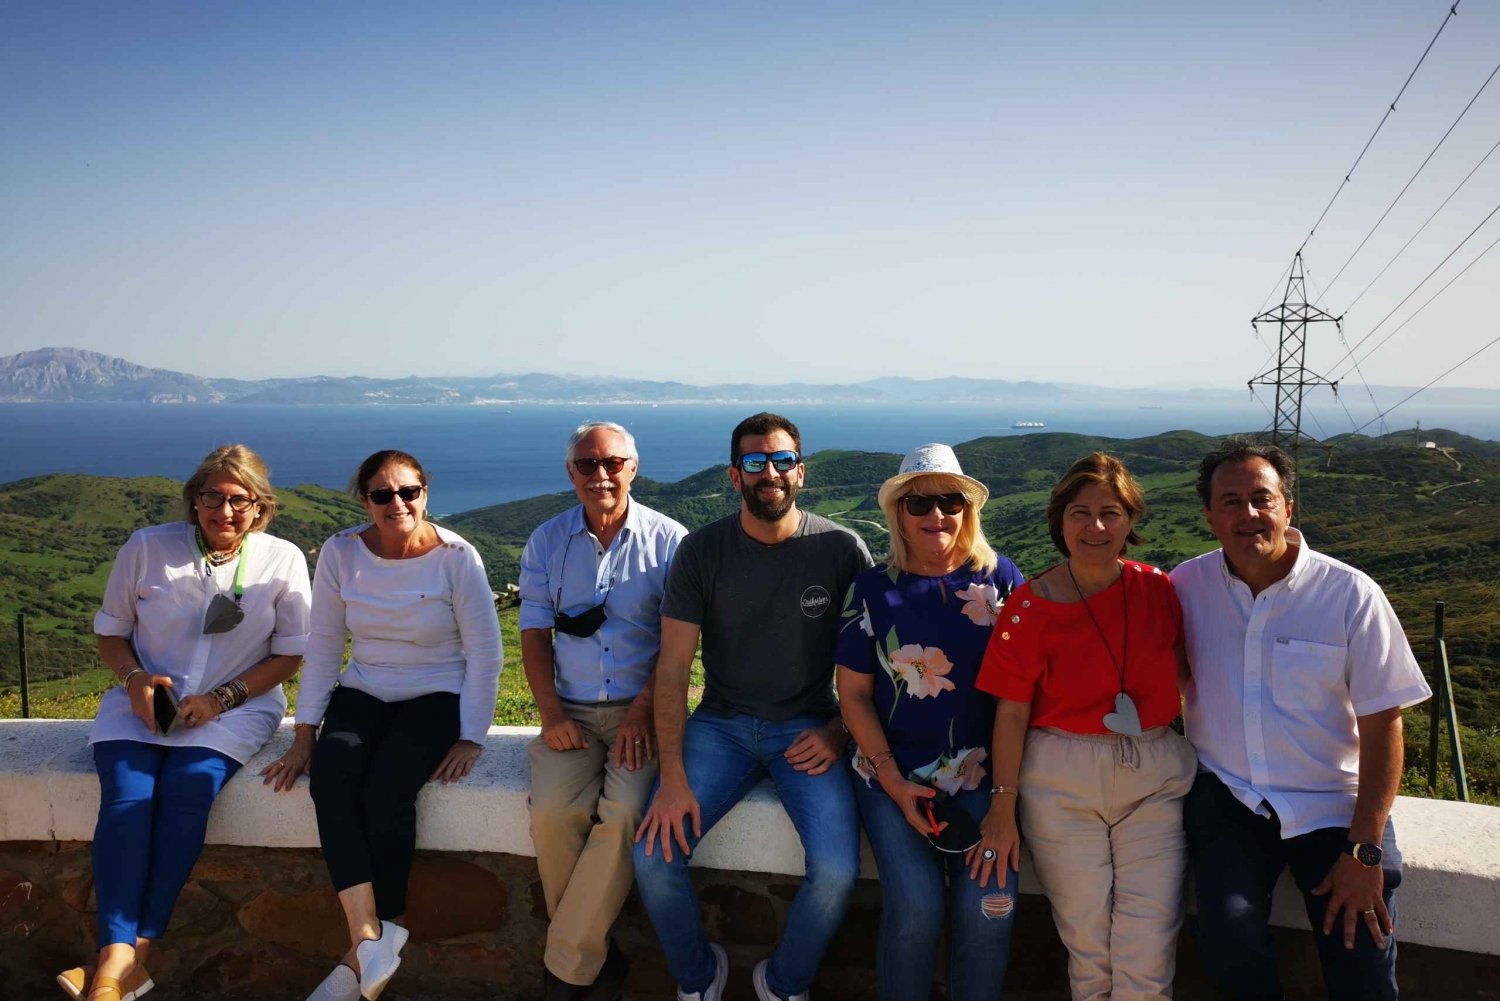 Prywatna wycieczka jednodniowa: Gibraltar i (Tangier) Maroko z Sewilli